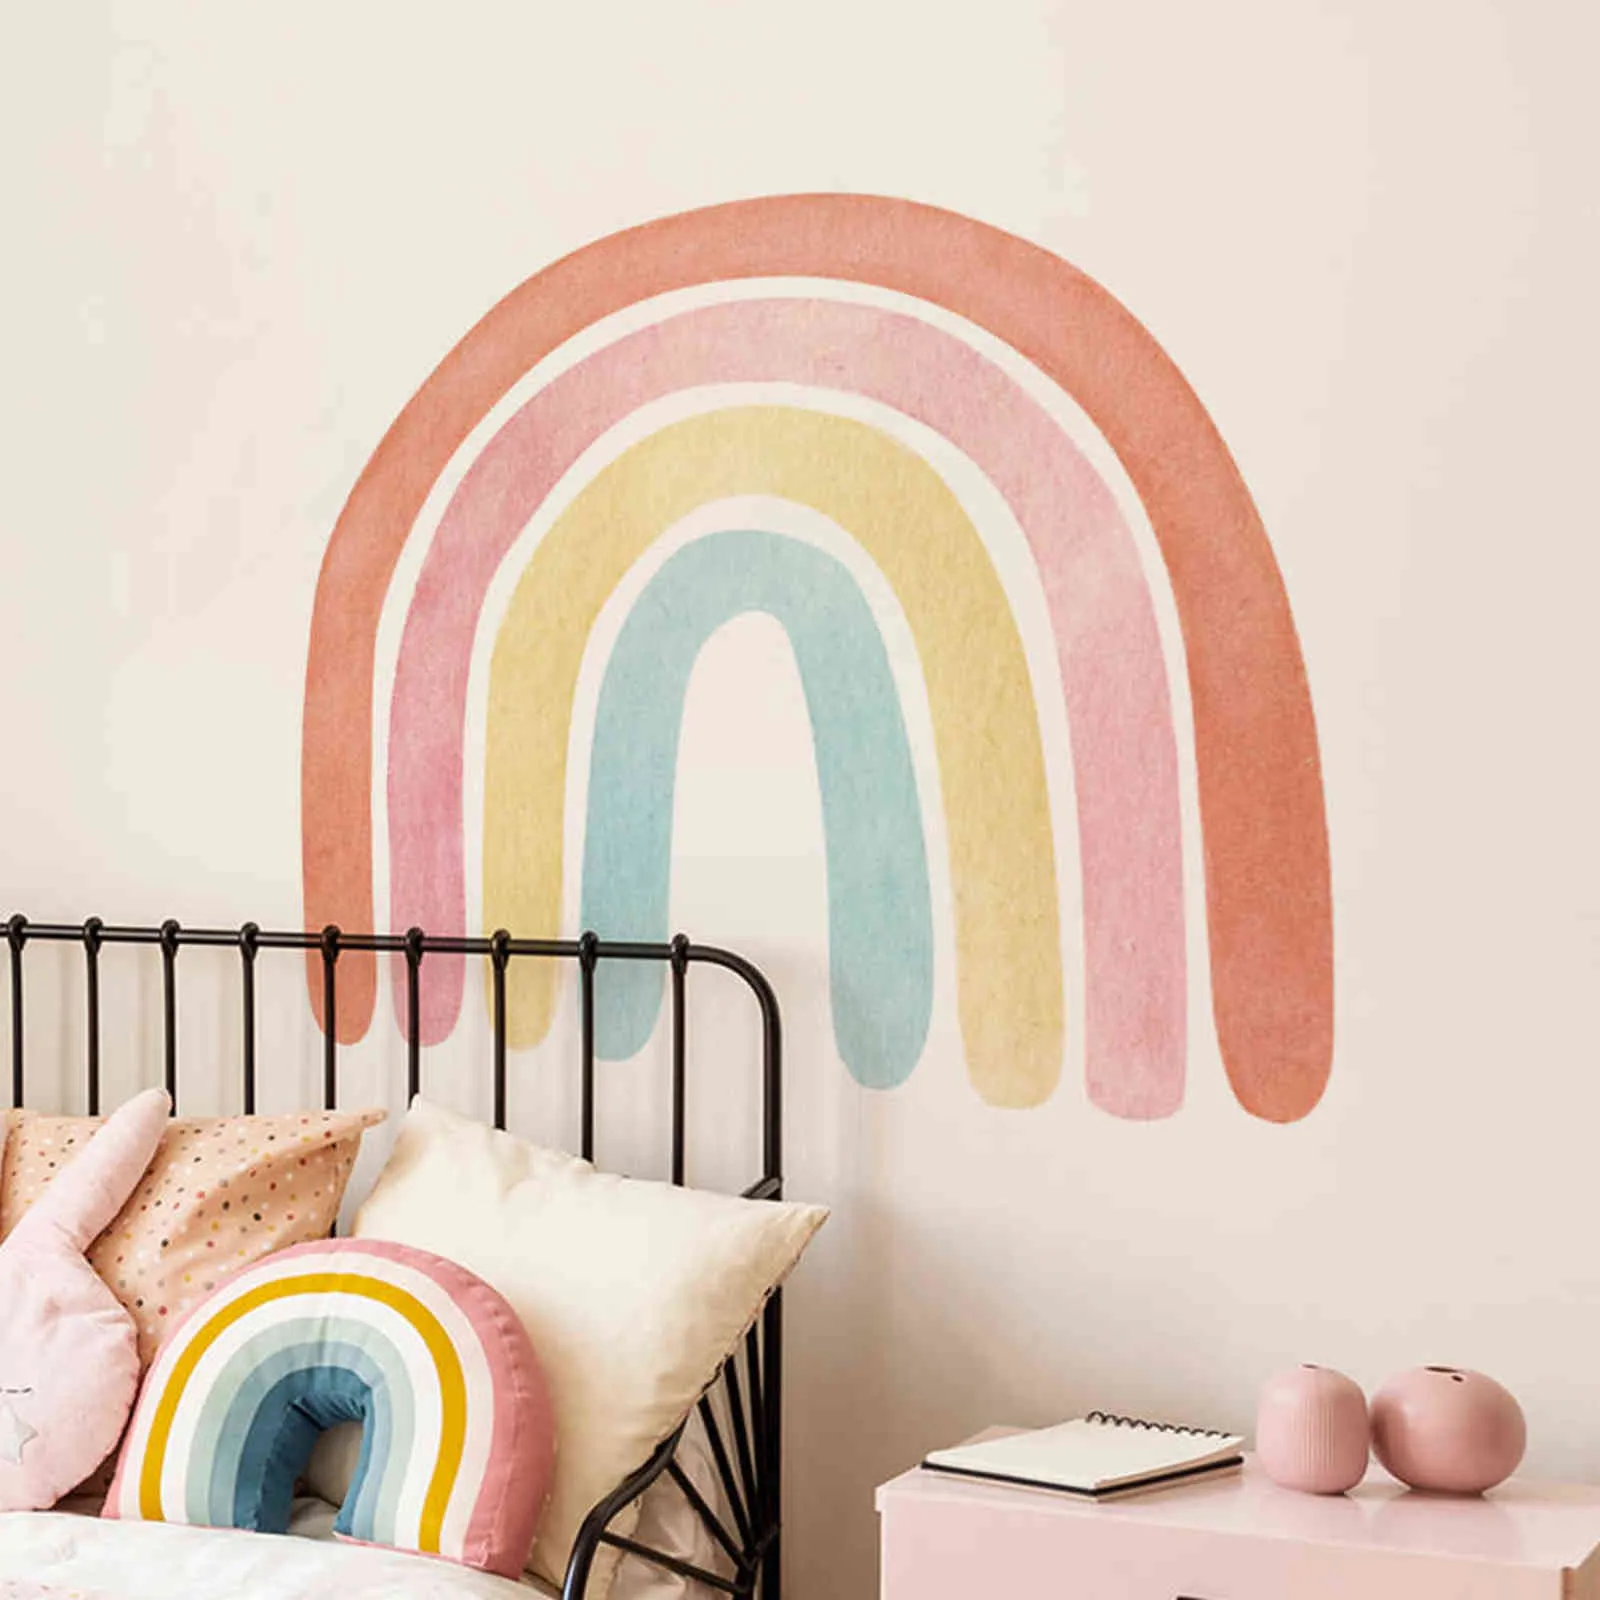 Funlife Dream Rainbow Wallpaper Adesivo da parete bambini Peel Stick Decalcomanie in PVC ecologiche rimovibili la cameretta dei bambini Decration 211124